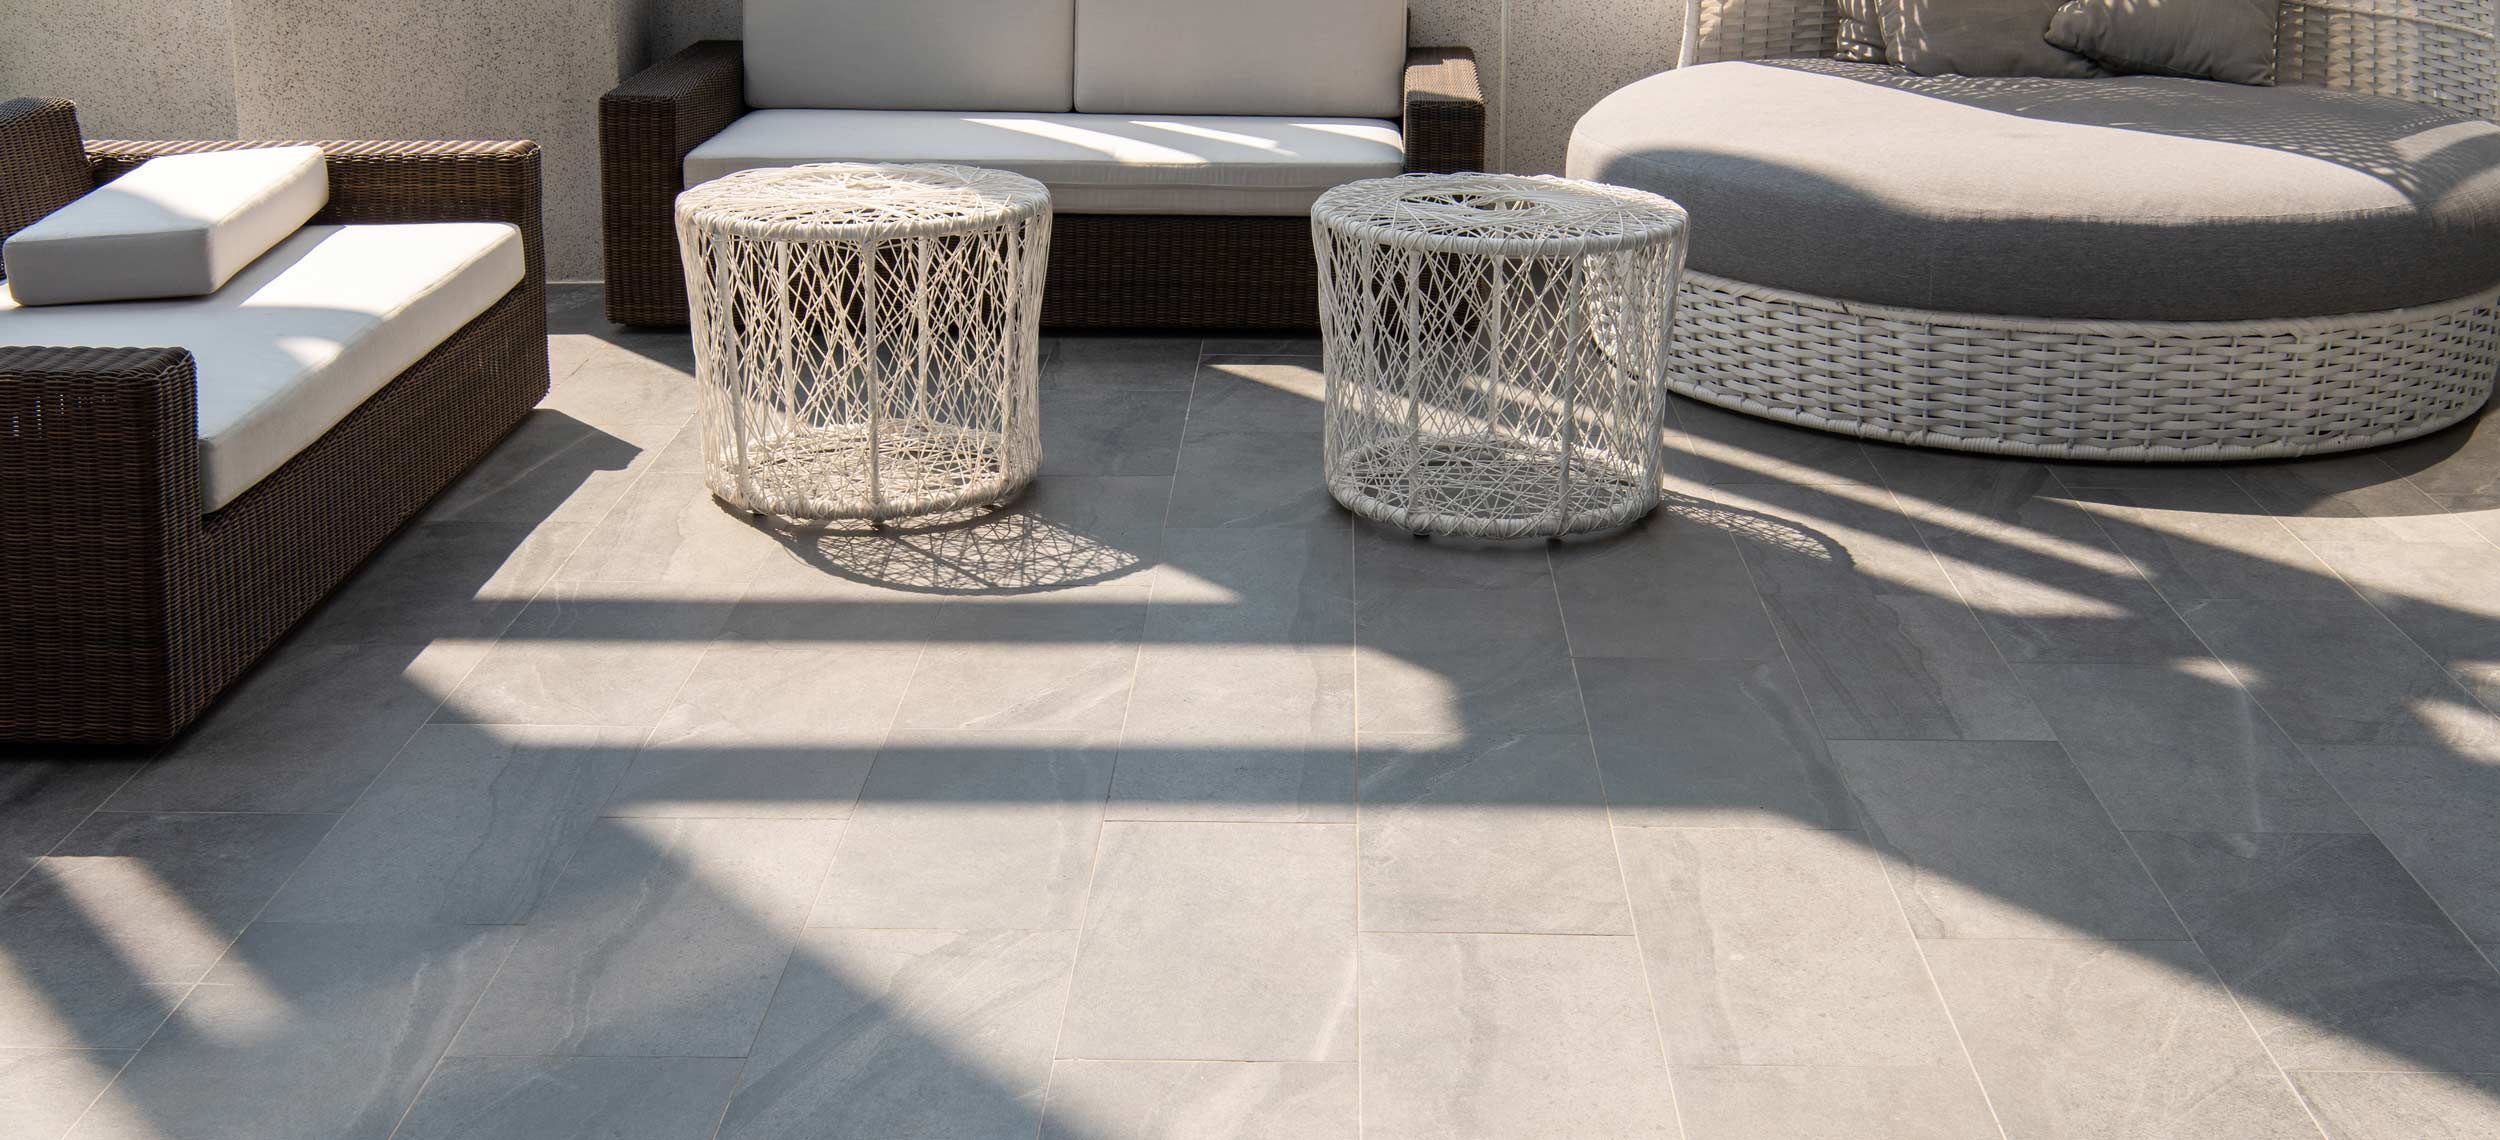 Terrasse mit grau marmorierten, großformatigen Fliesen und Sitzgarnitur